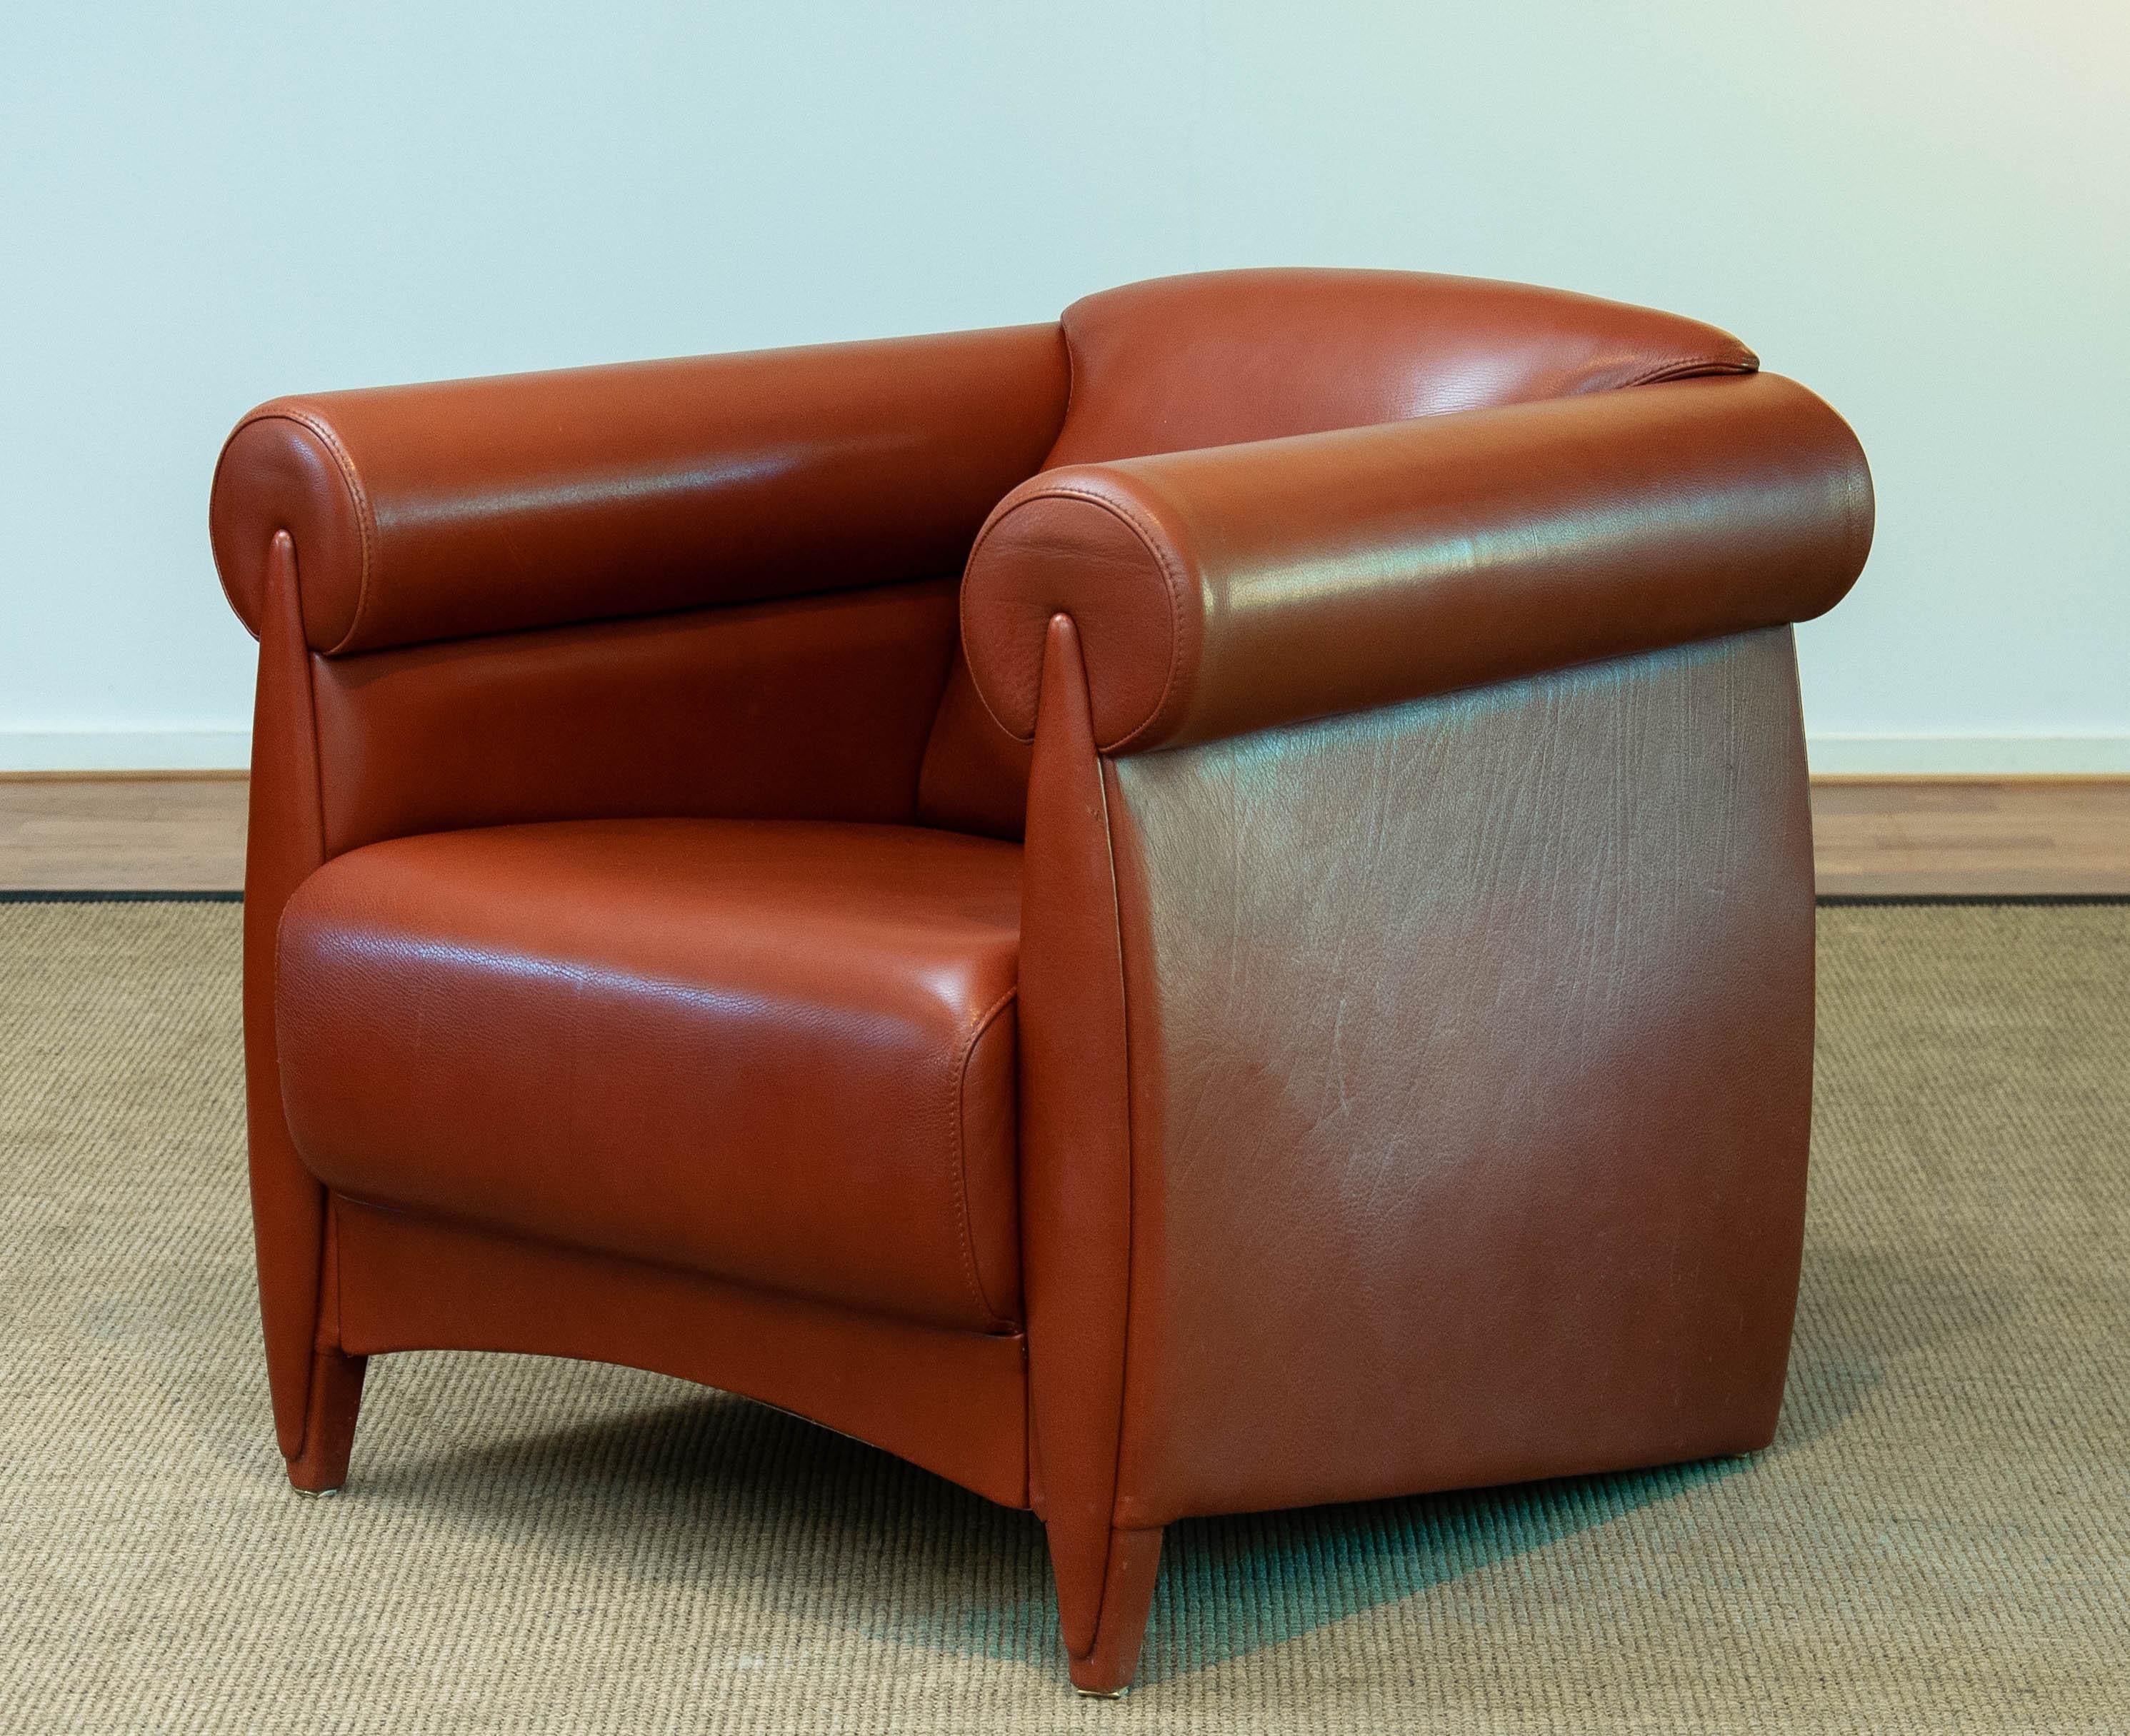 Sillas de salón / sillón club muy exclusivos y raros del diseñador danés Klaus Wettergren en cantidad limitada y sólo bajo pedido especial construir por pedidos selectivos.
Esta silla está fabricada con un alto nivel de calidad y sólo se utilizan